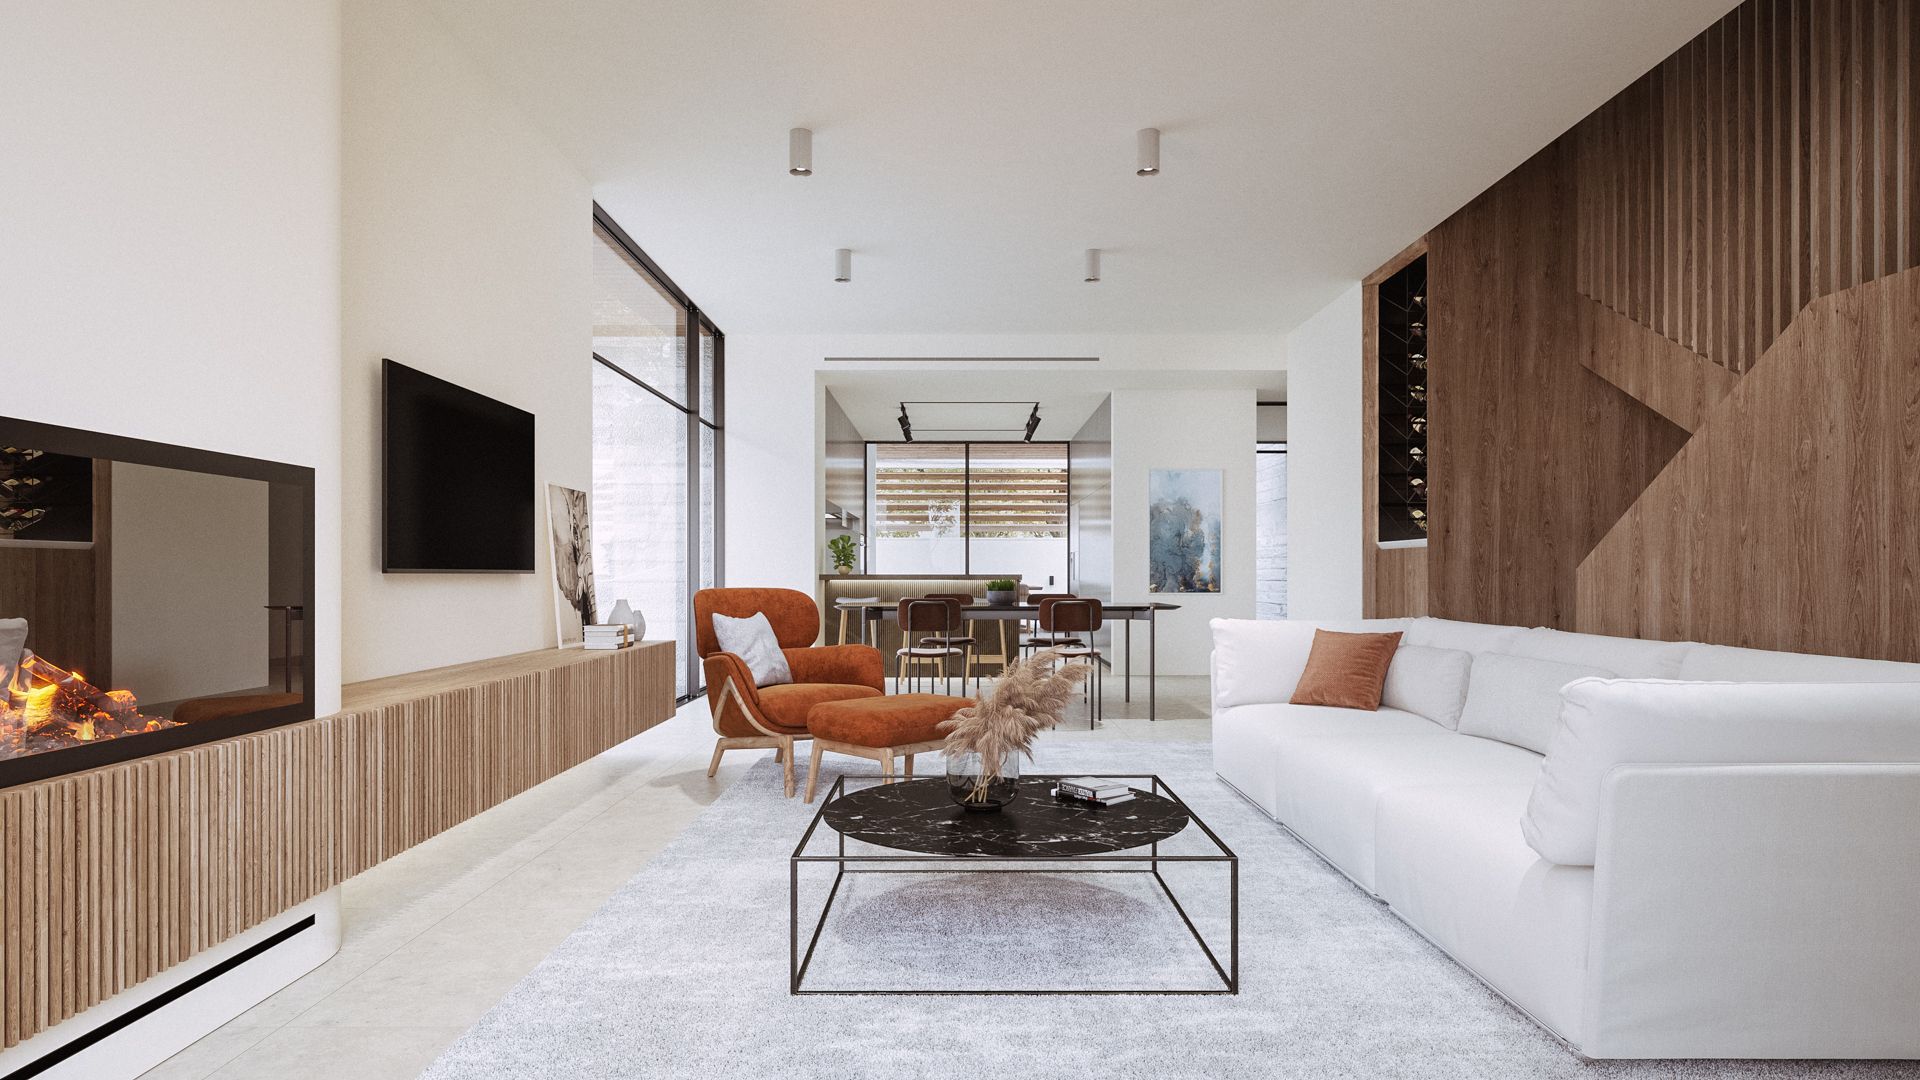 GAL Residence - living room